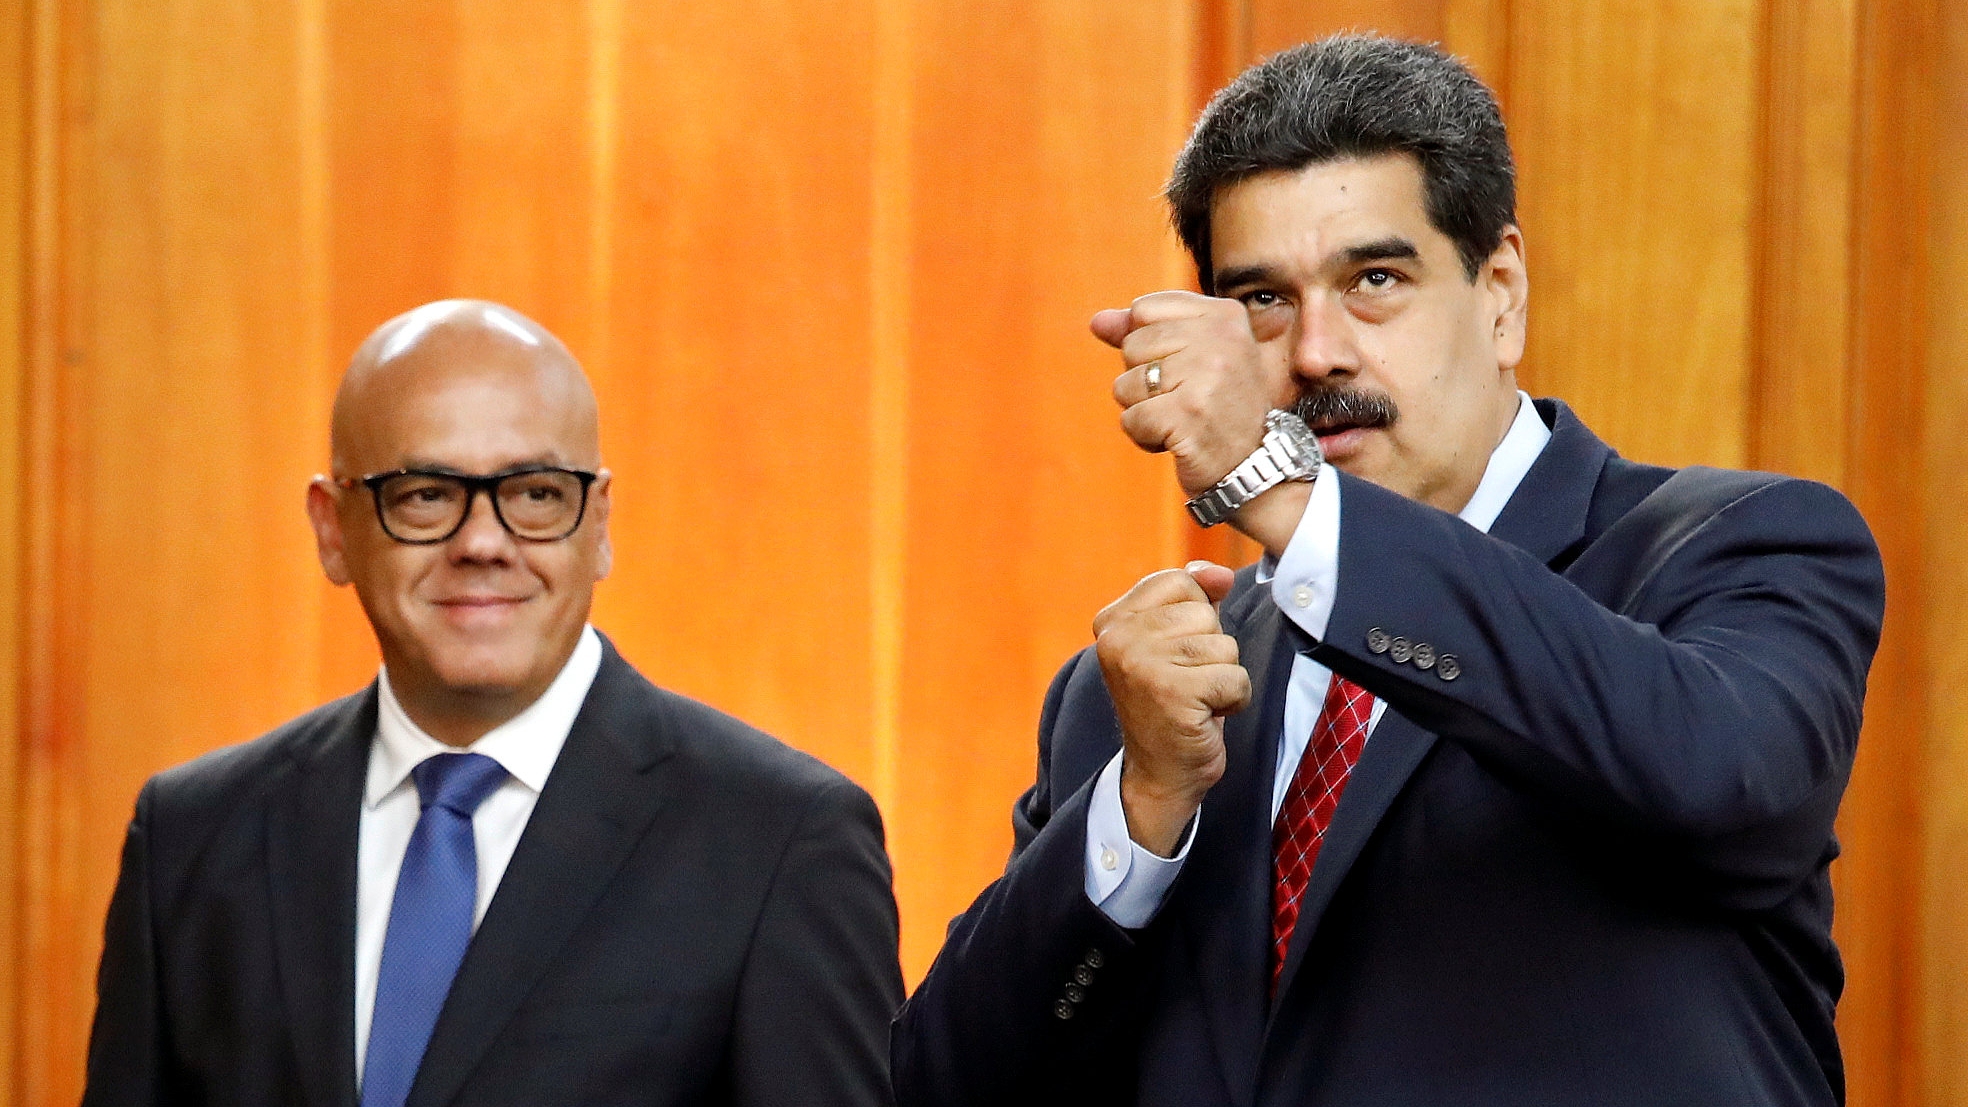 Sigue la purga chavista: el régimen de Maduro informó la detención de 19 altos funcionarios en Venezuela por corrupción